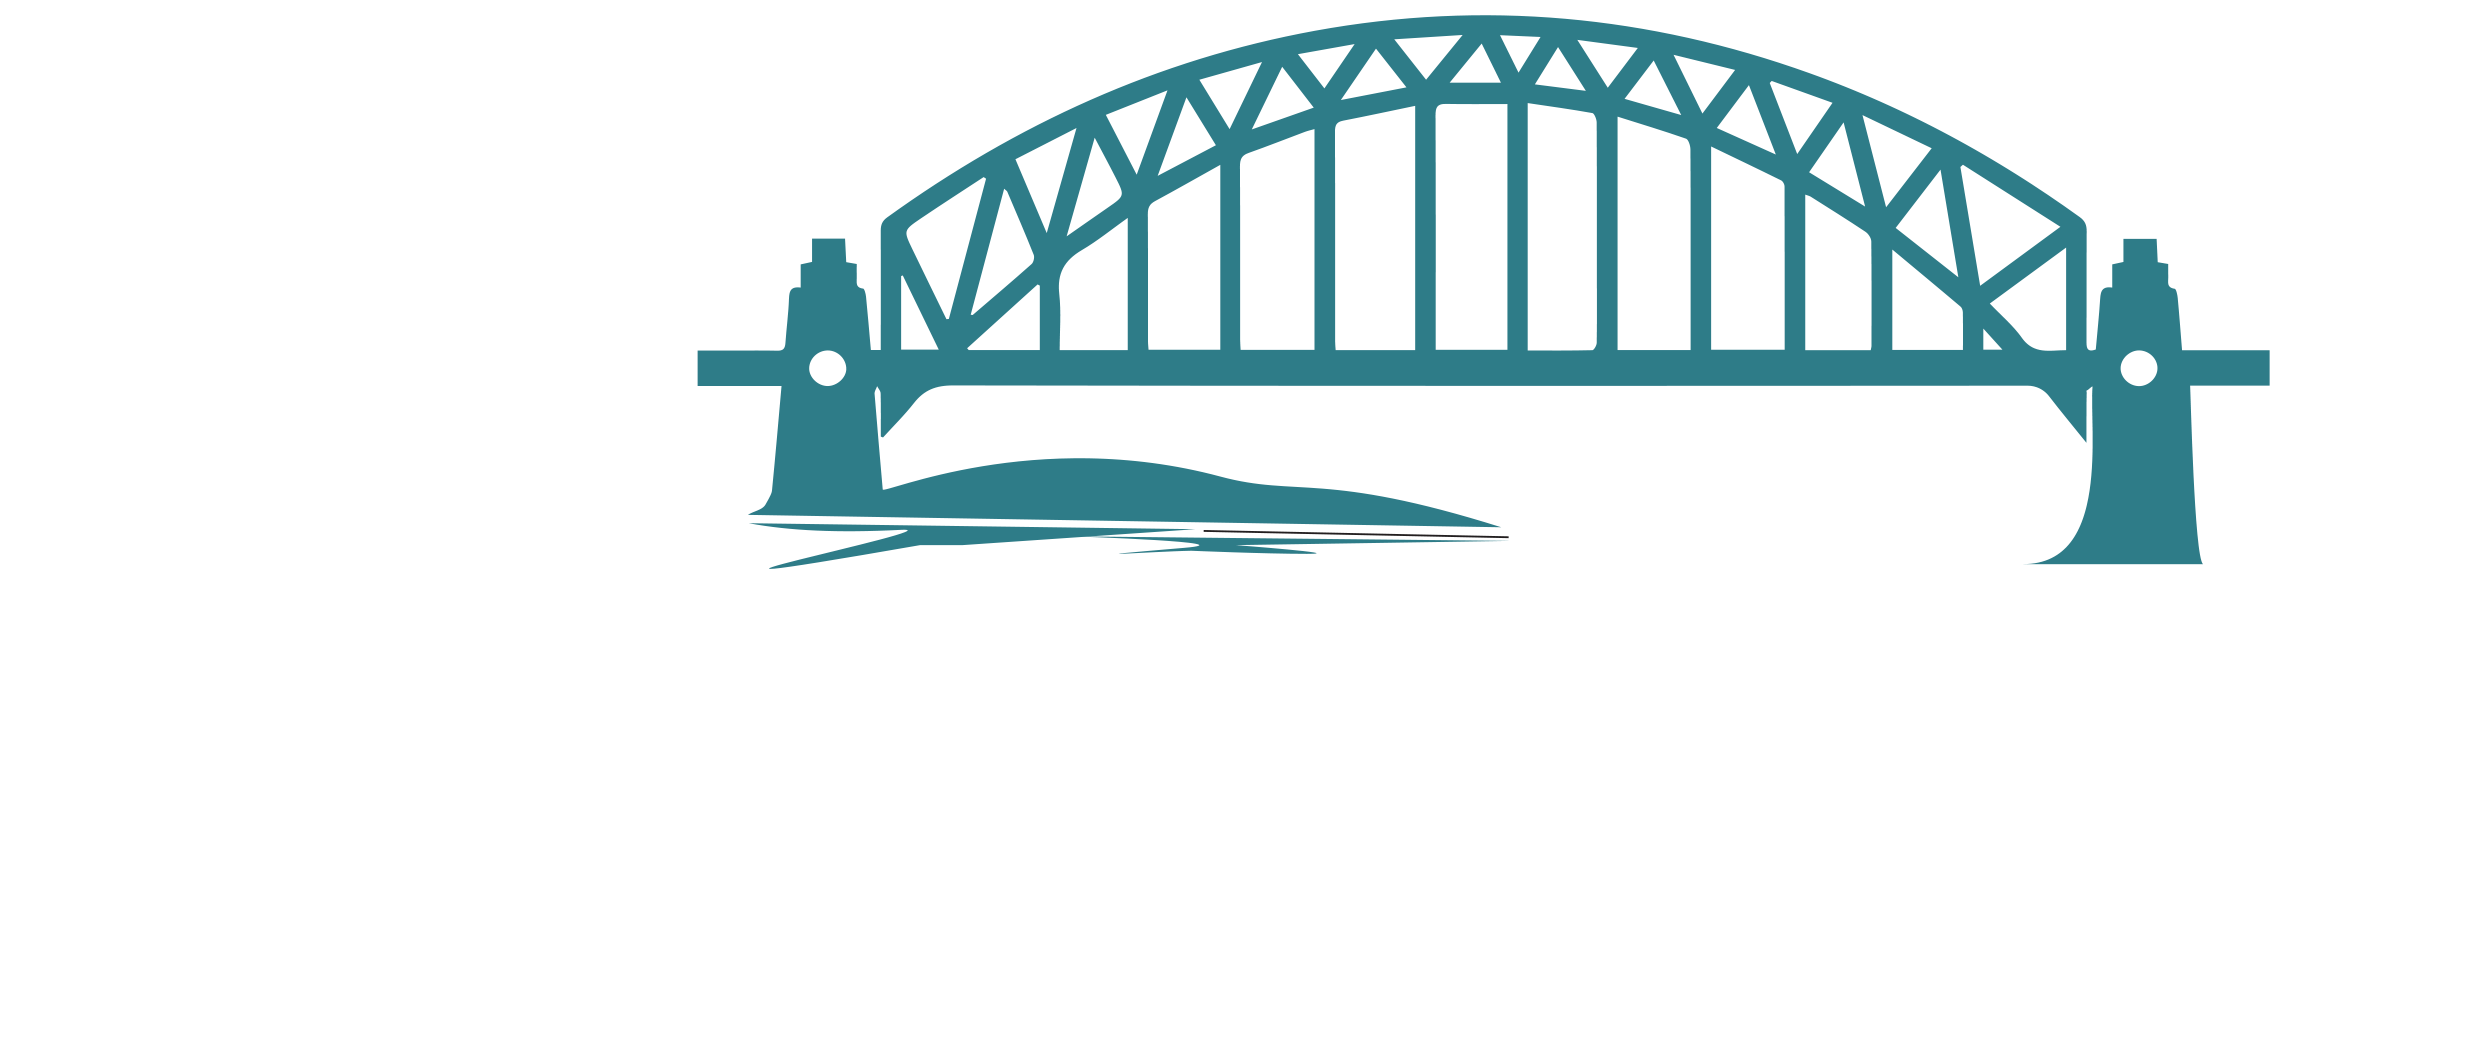 Glasgow Chamber of Commerce Logo